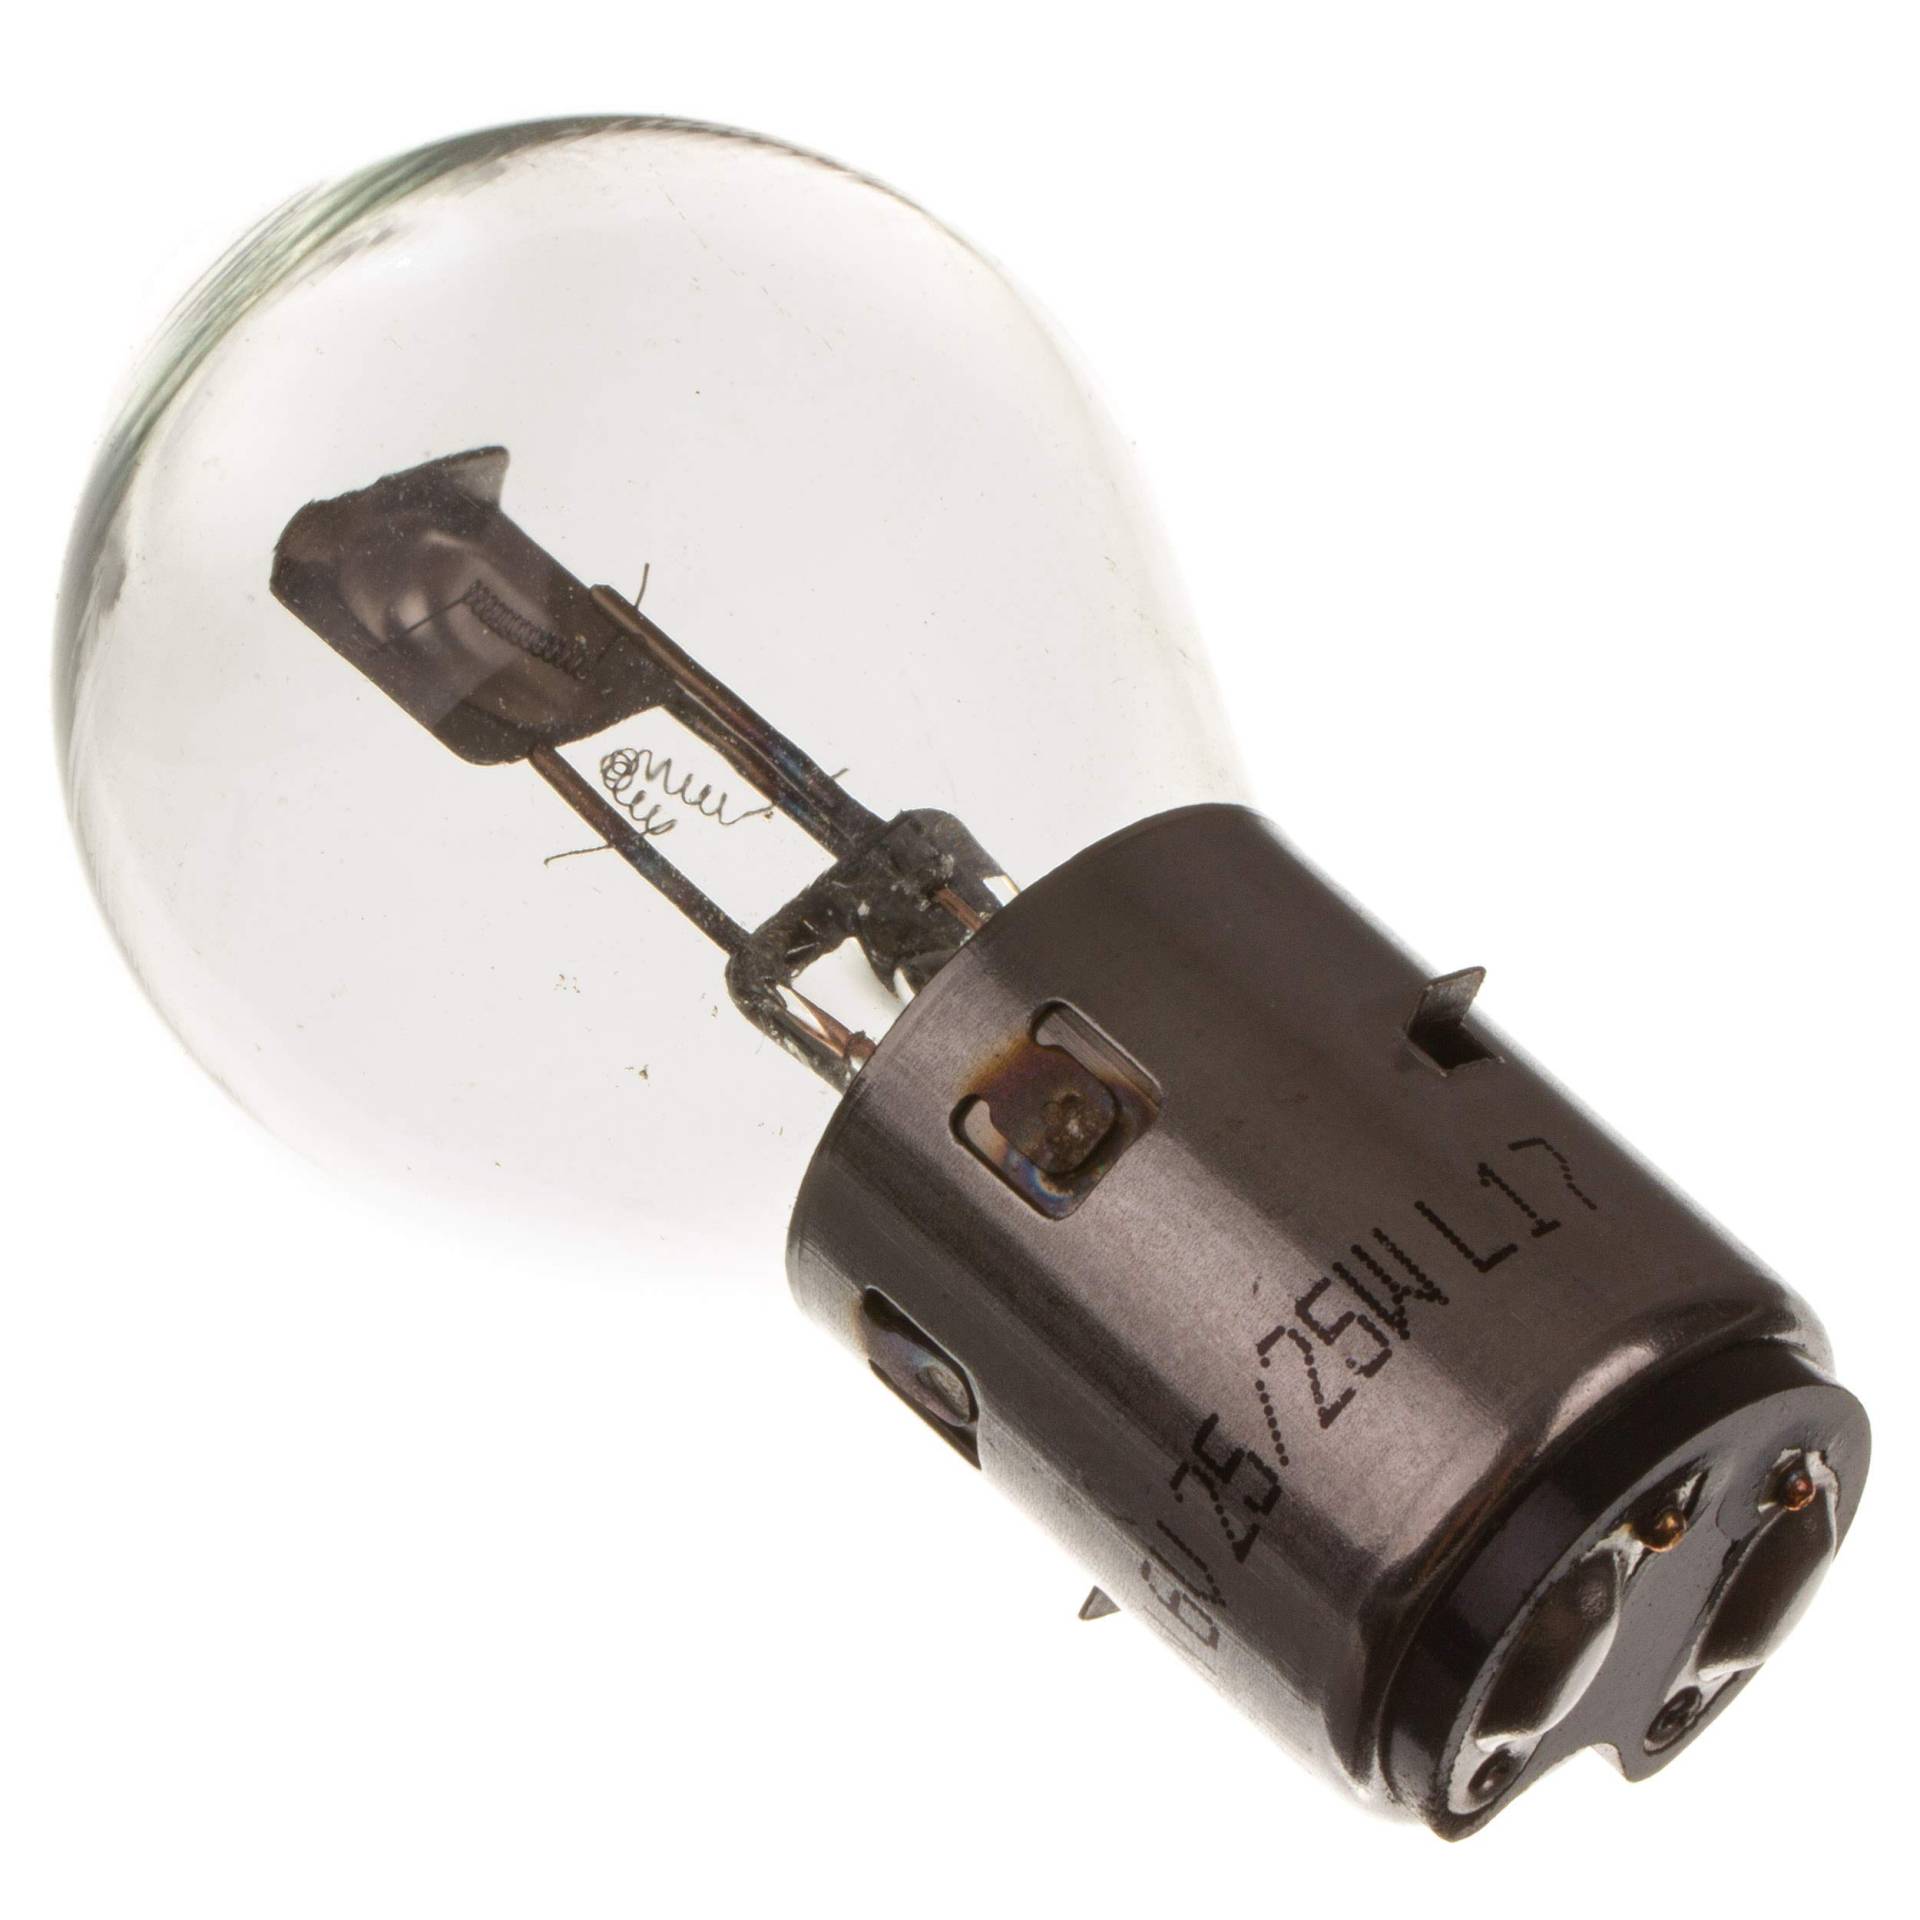 Biluxlampe 6V 25/25W BA20d (Markenlampe GLÜWO Germany) von GLÜWO